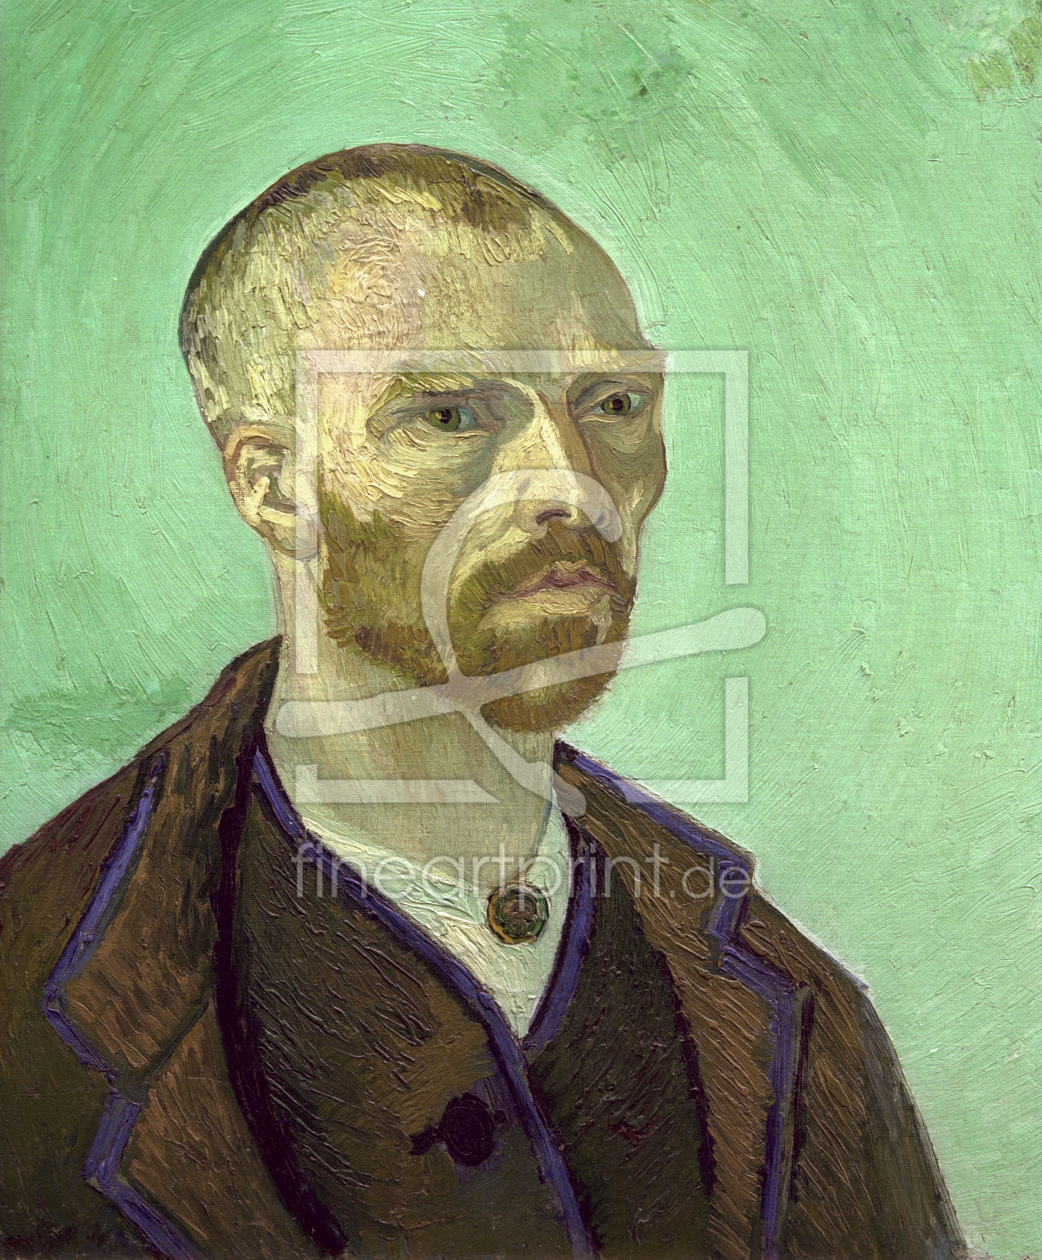 Bild-Nr.: 30003070 van Gogh, Self-portrait erstellt von van Gogh, Vincent